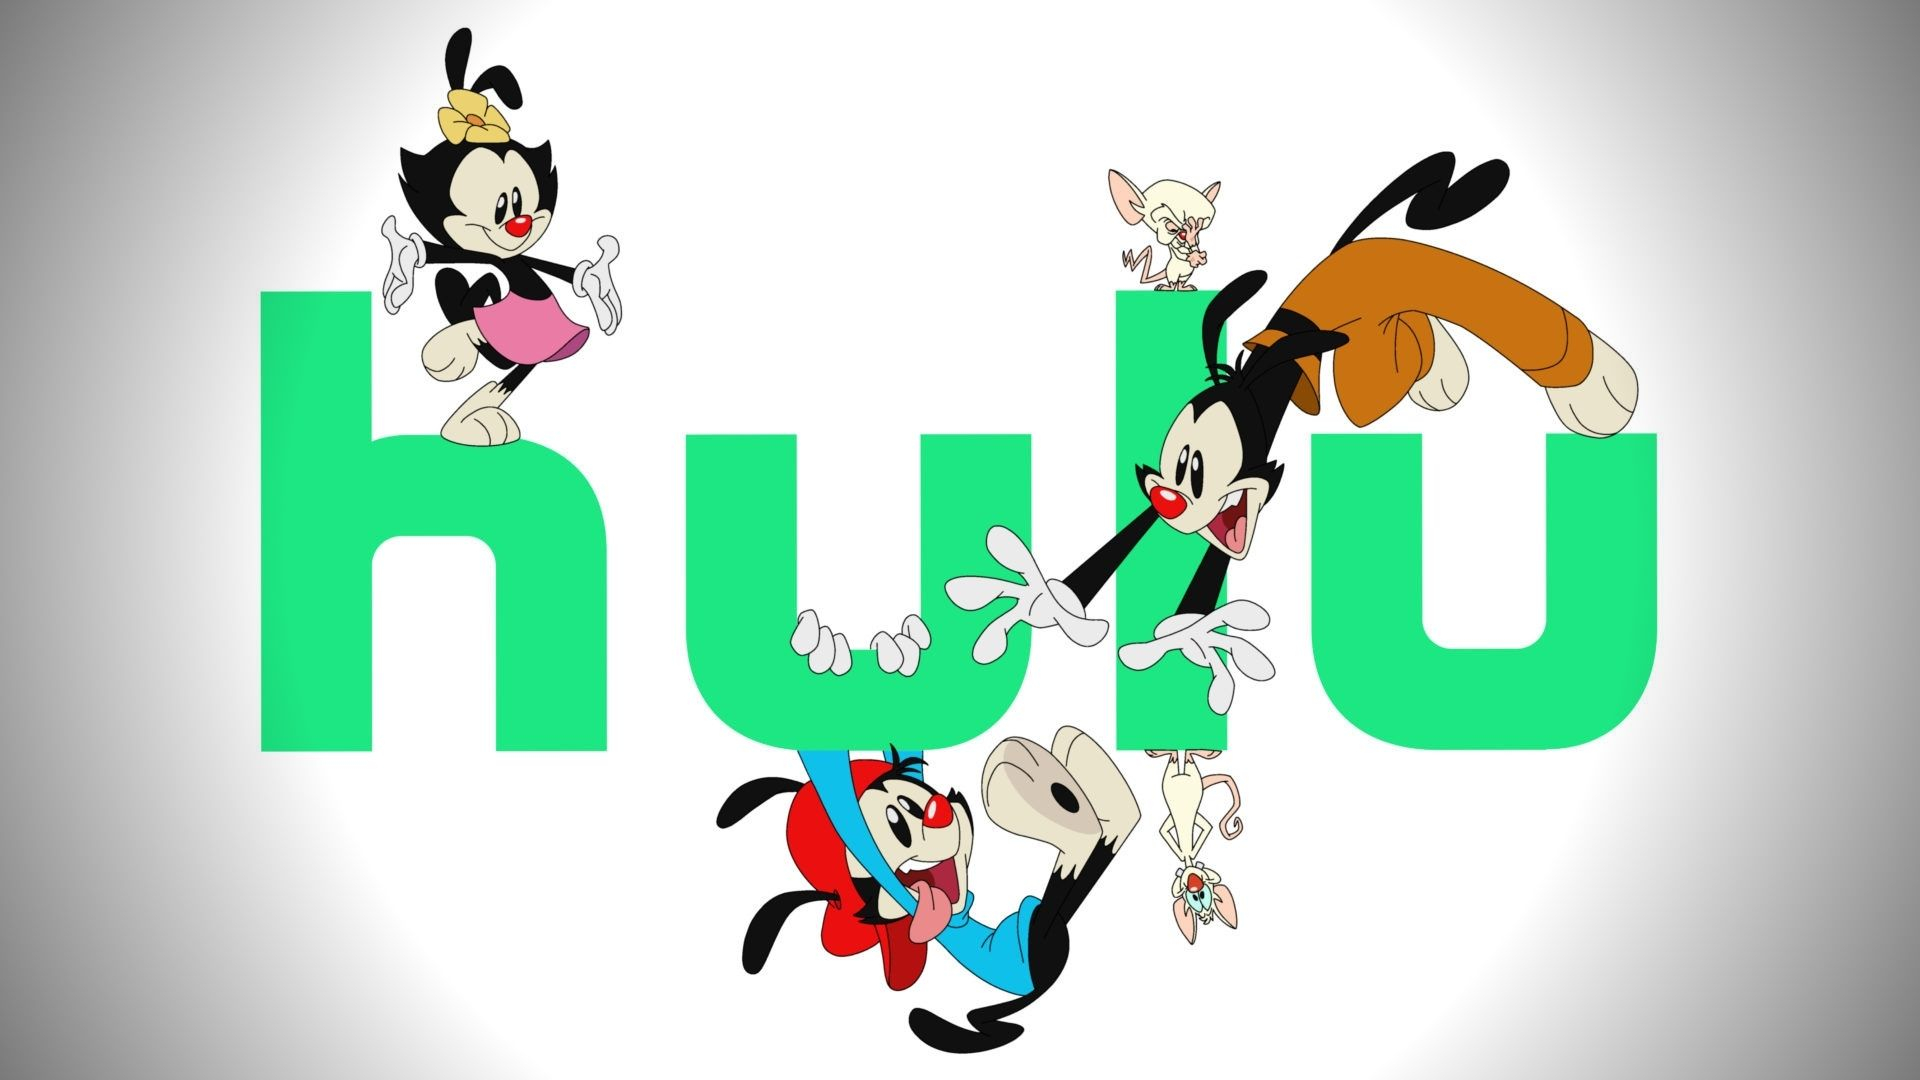 1920x1080 The Animaniacs \u0026 Pinky and the Brain reboot coming to Hulu in 2020 Dexert